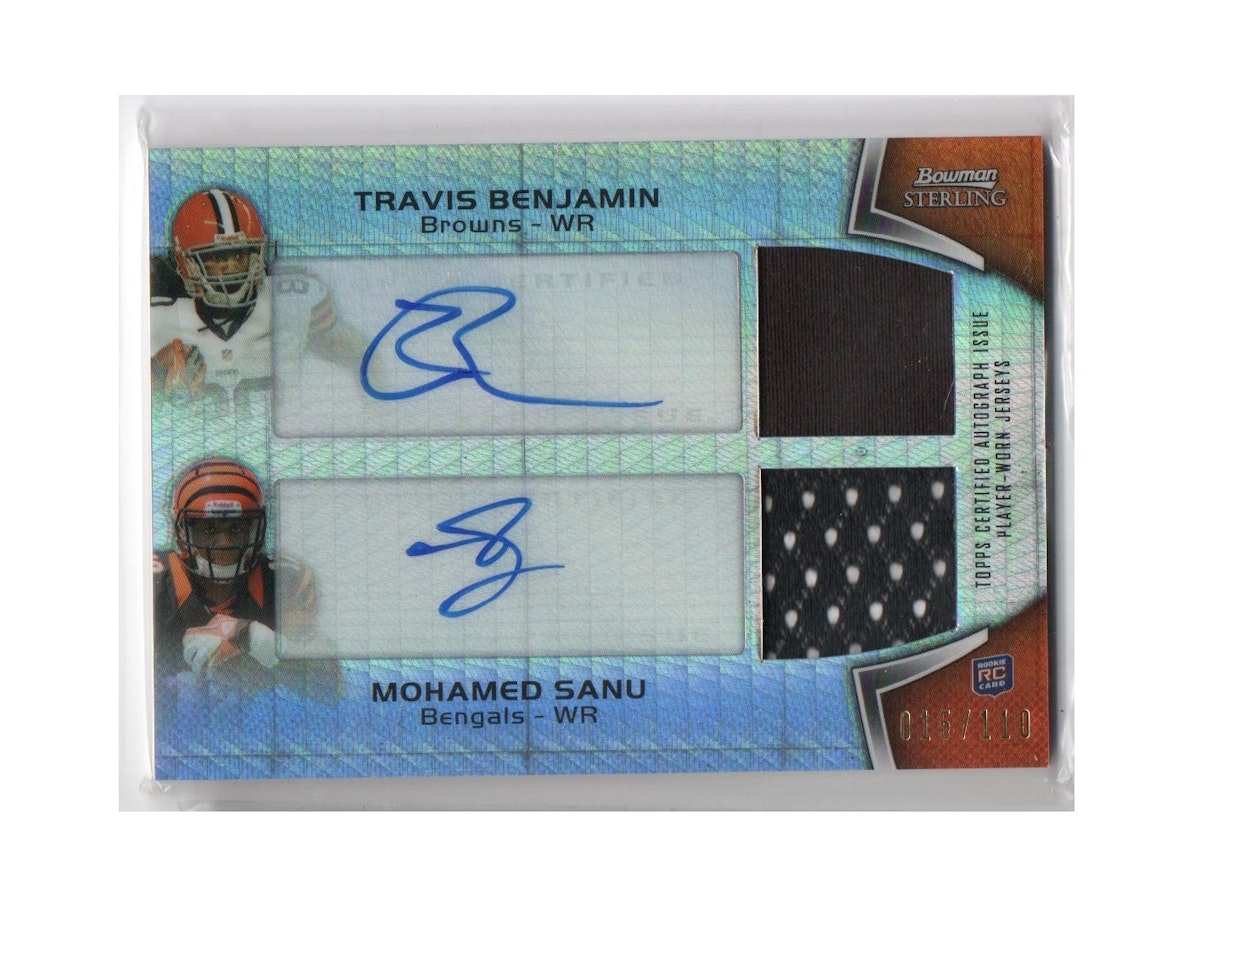 2012 Bowman Sterling Dual Autographed Relics Prism Refractors #BS Travis Benjamin Mohamed Sanu (50-X276-NFLBROWNS+NFLBENGALS)